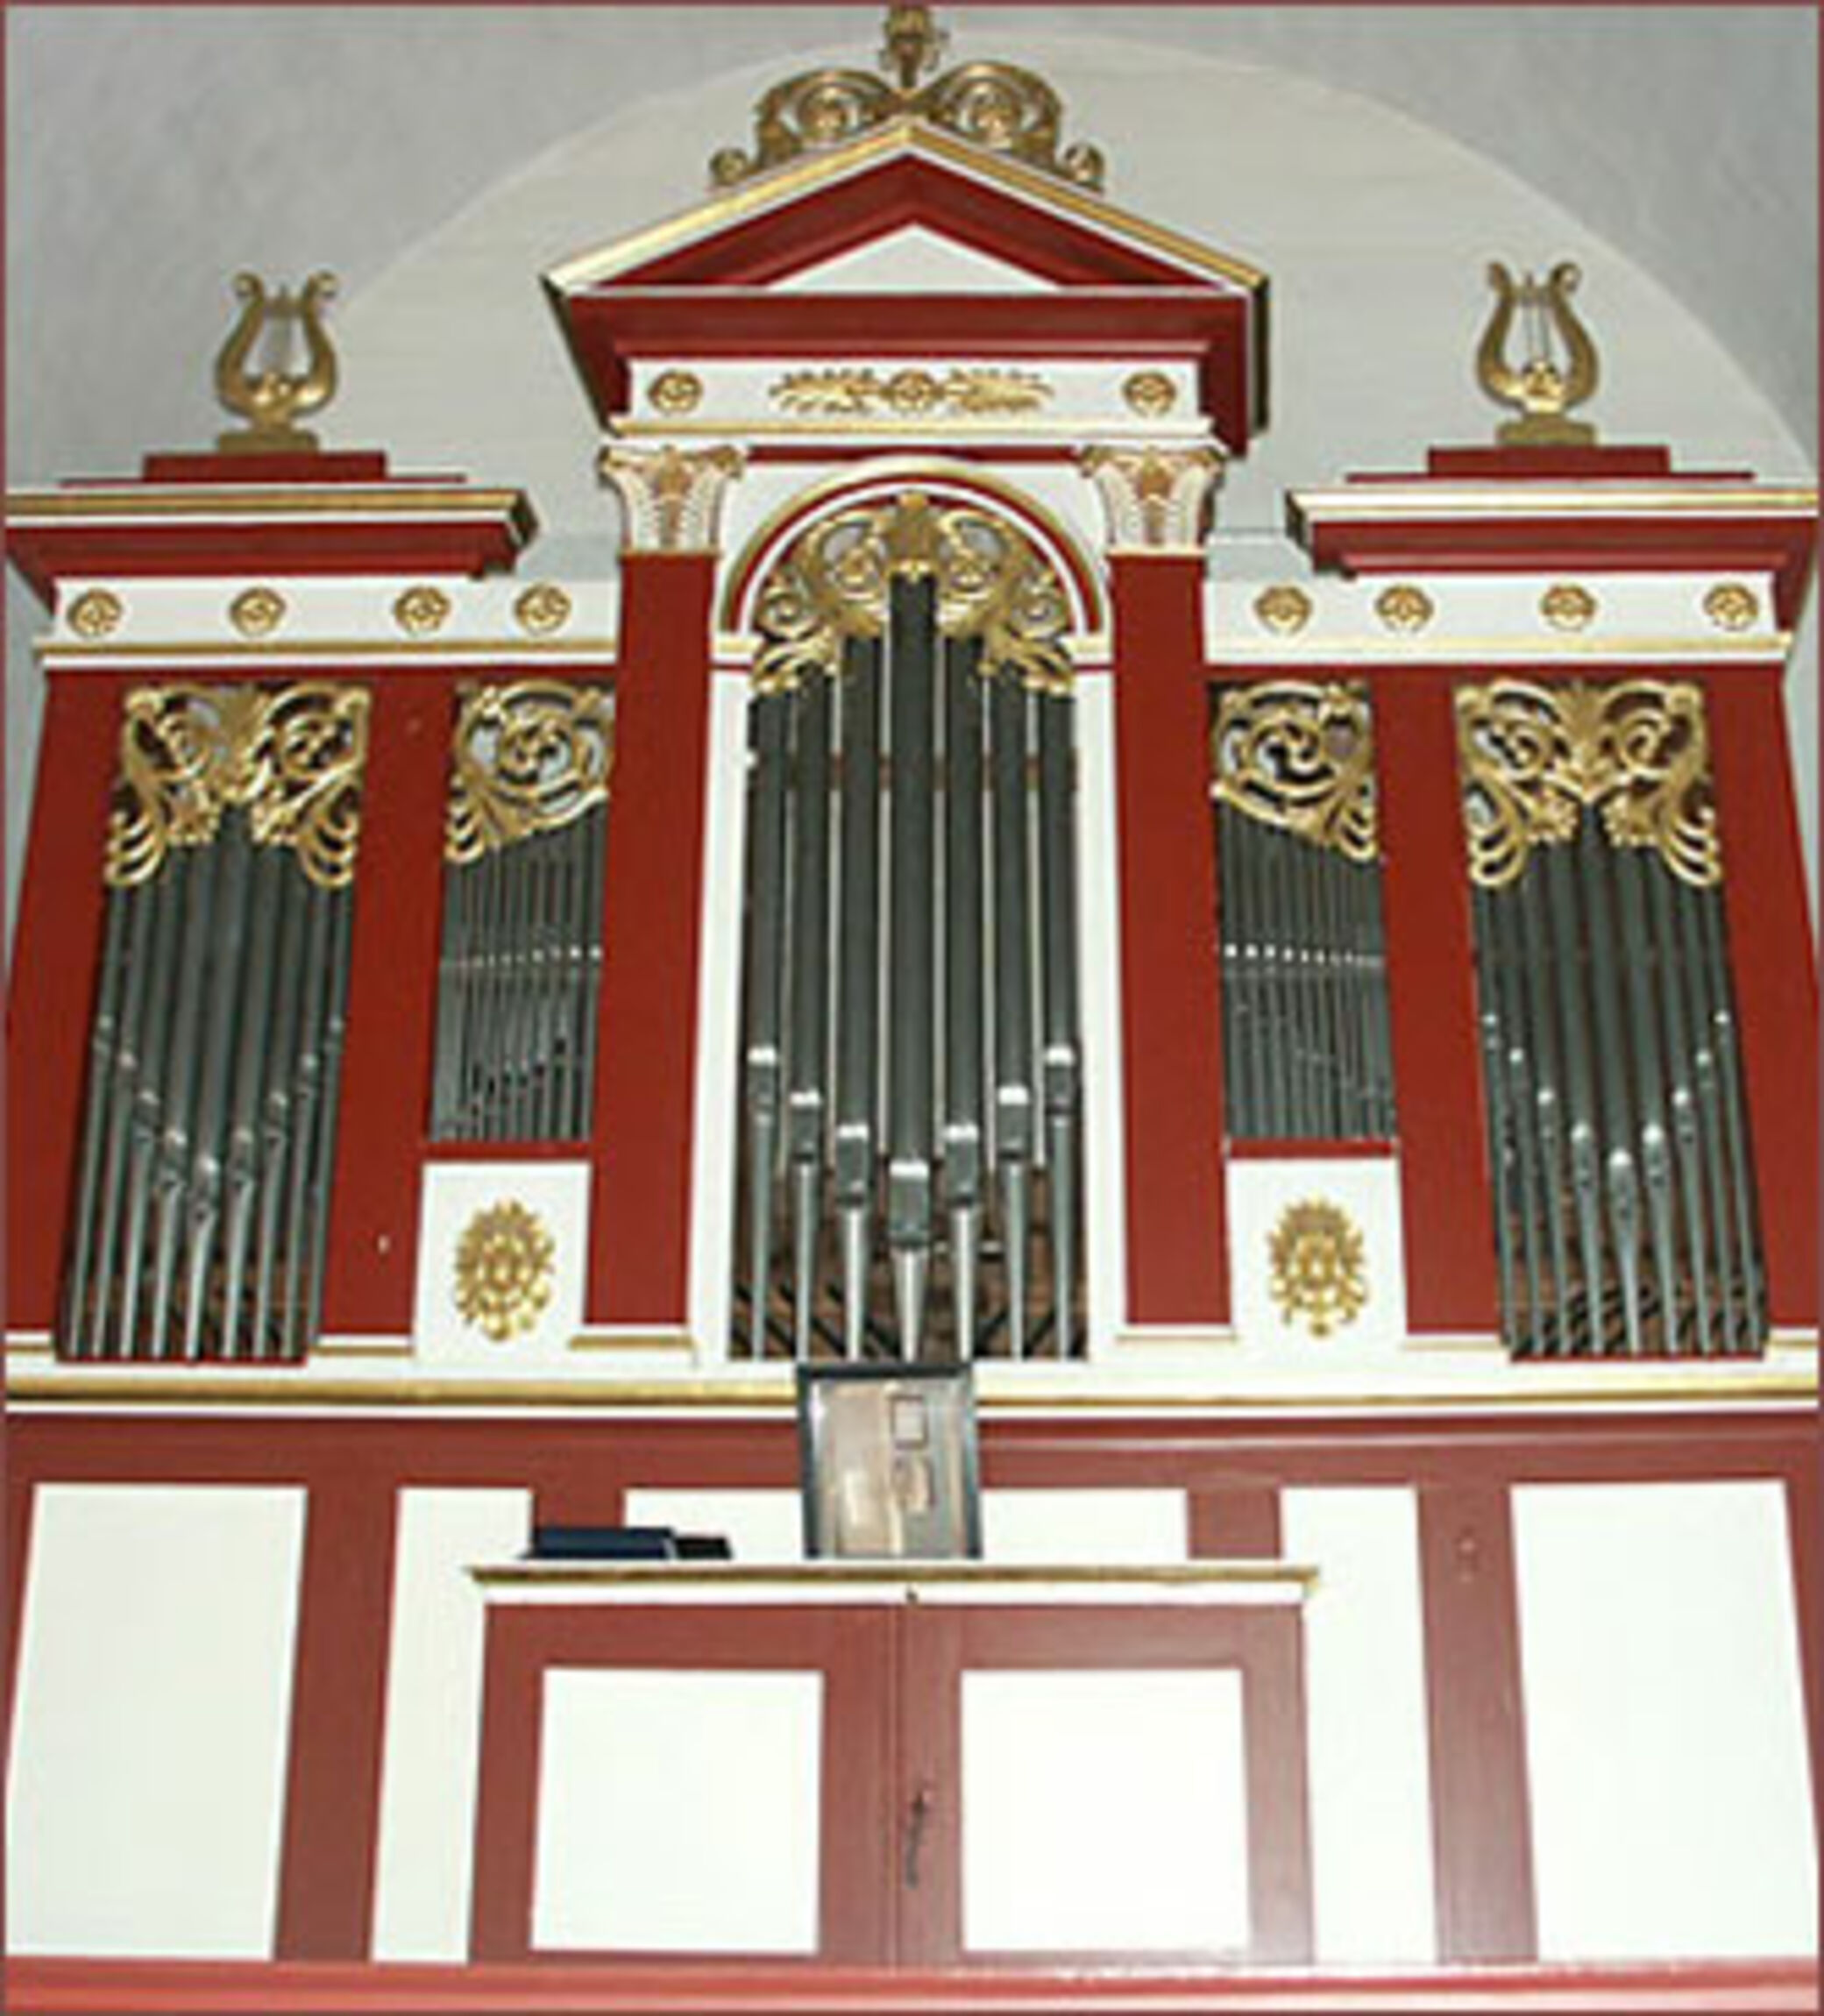 Orgel vor Restaurierung